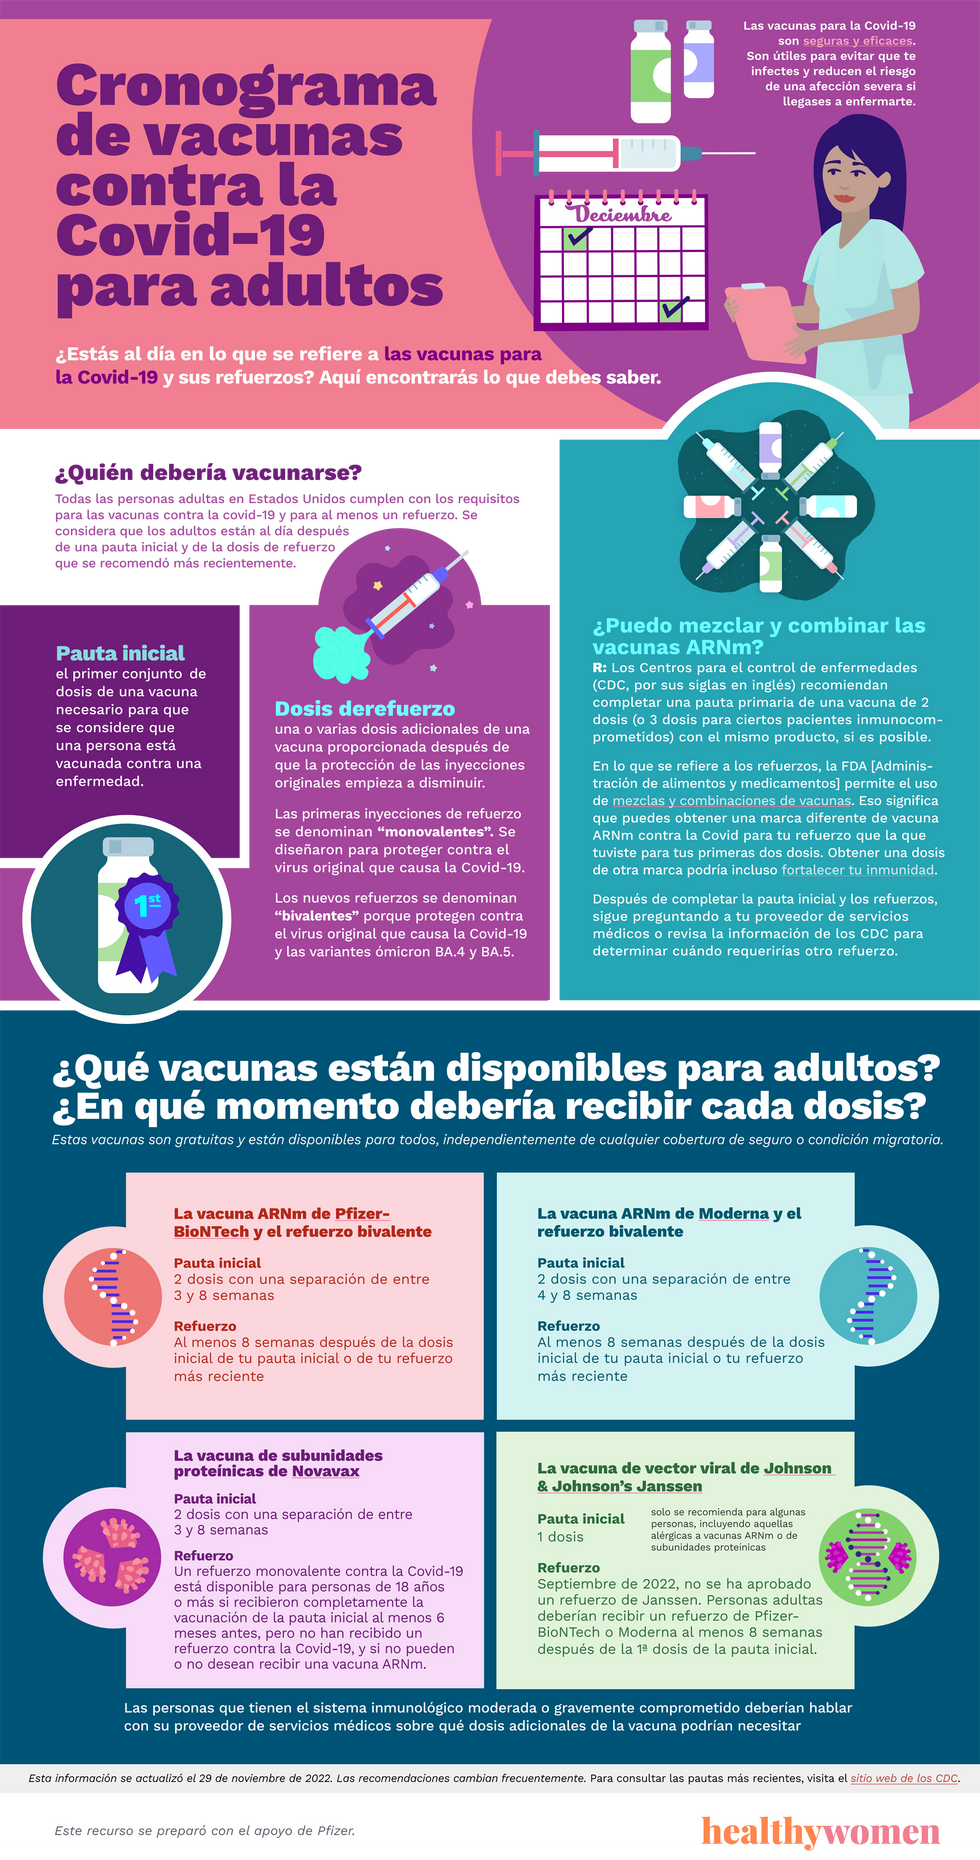 Infographic Cronograma de vacunas contra la Covid-19 para adultos. Click the image to open the PDF